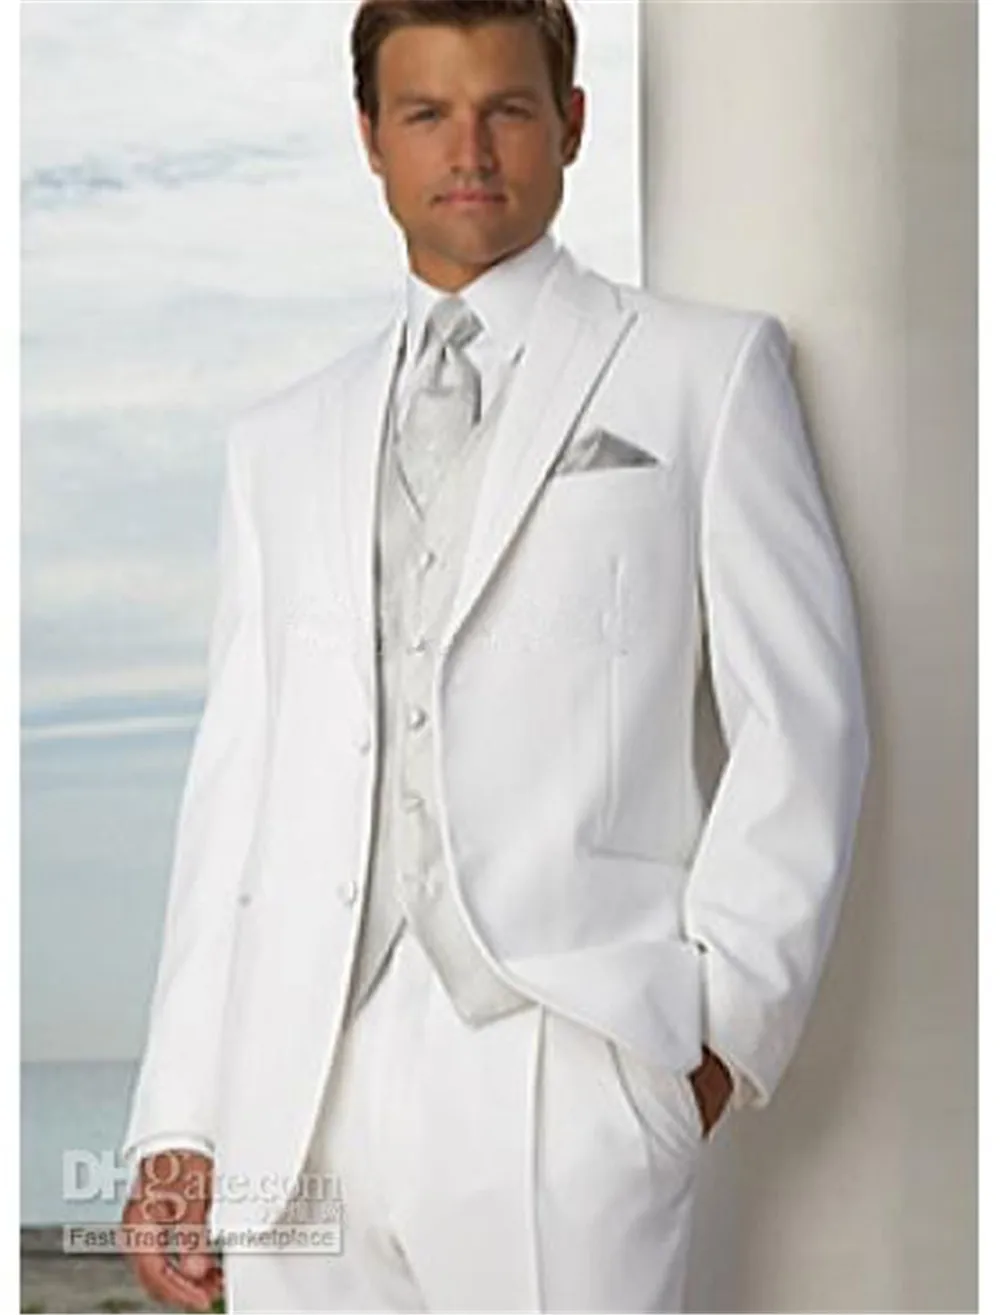 Красивый белый свадебный смокинг, приталенный пиковый мужской костюм, недорогой костюм жениха на двух пуговицах(пиджак+ брюки+ жилет+ галстук